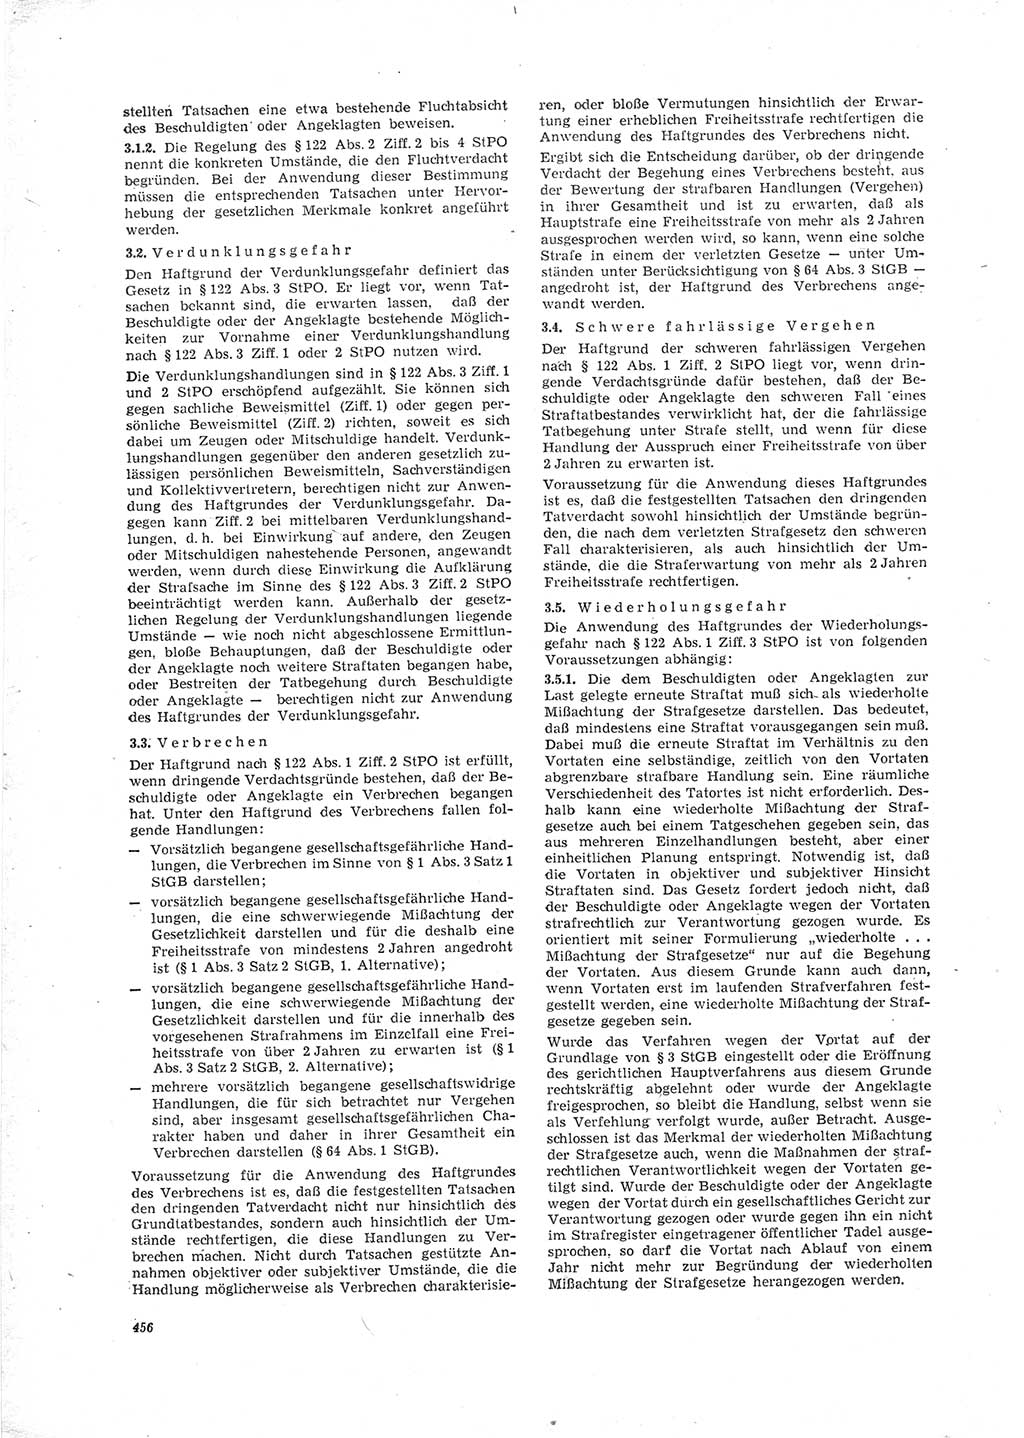 Neue Justiz (NJ), Zeitschrift für Recht und Rechtswissenschaft [Deutsche Demokratische Republik (DDR)], 23. Jahrgang 1969, Seite 456 (NJ DDR 1969, S. 456)